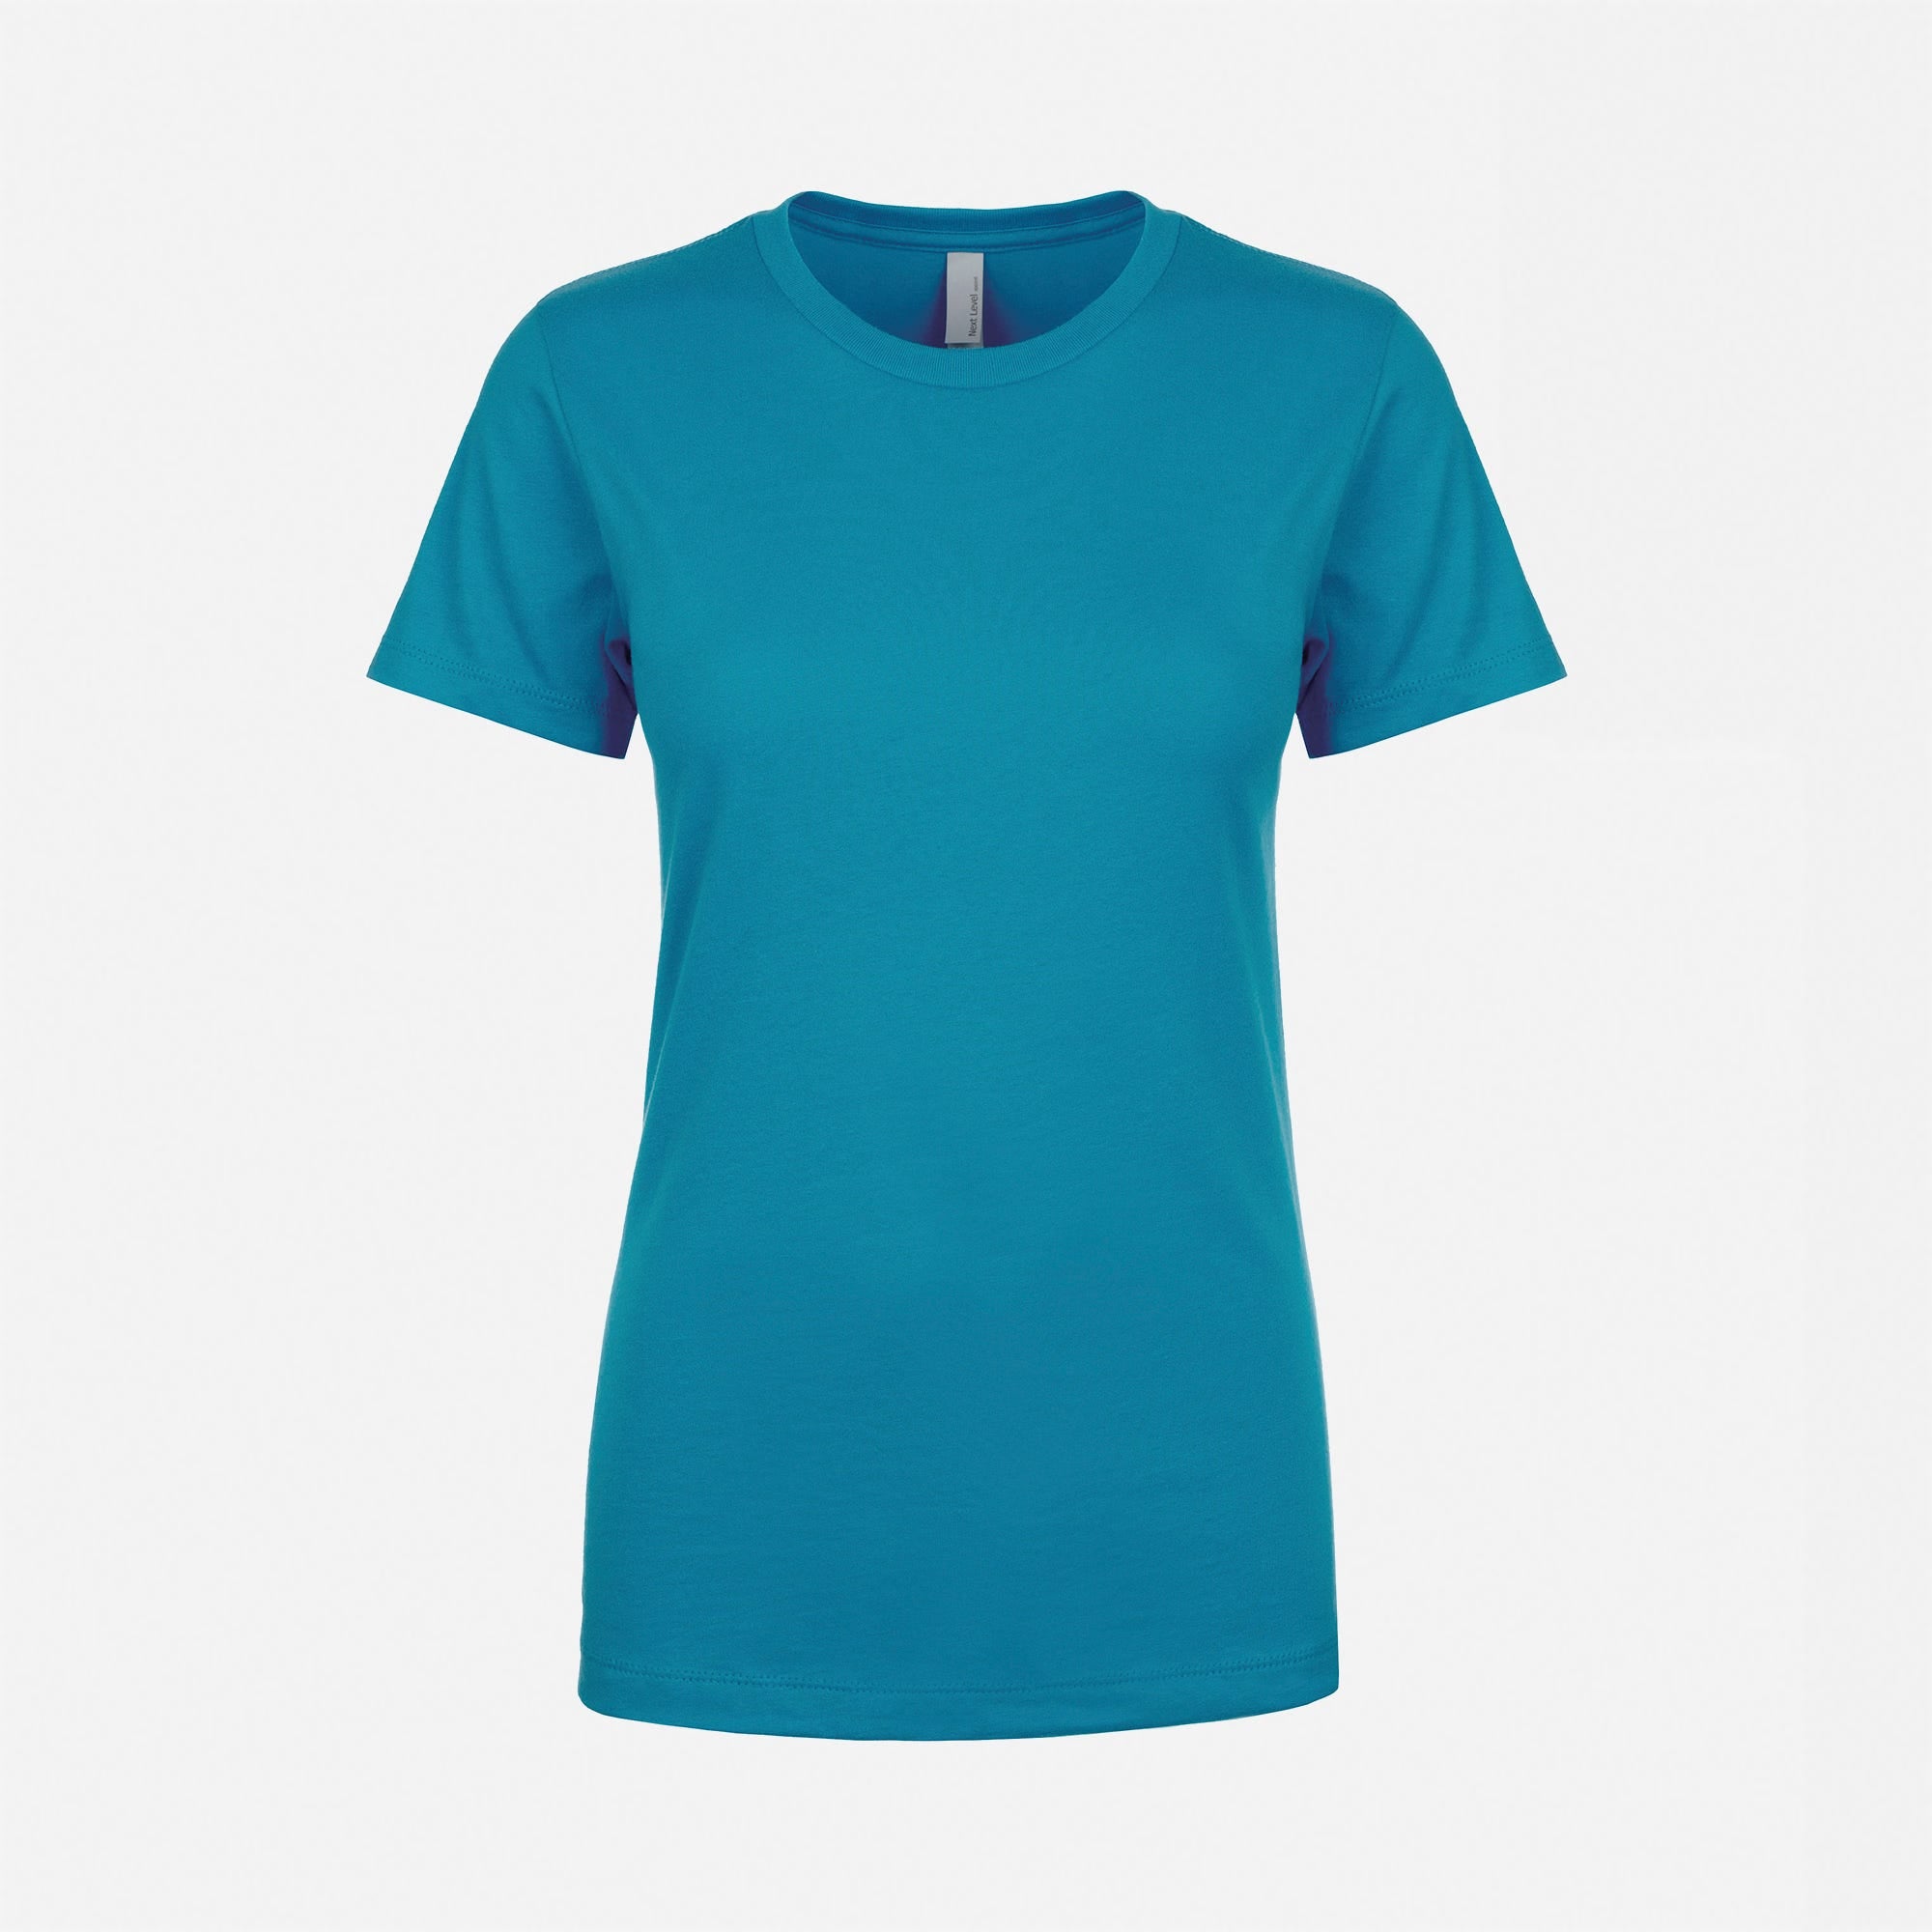 Cotton Boyfriend T-Shirt Turquoise 3900 Next Level Apparel Women's Front View